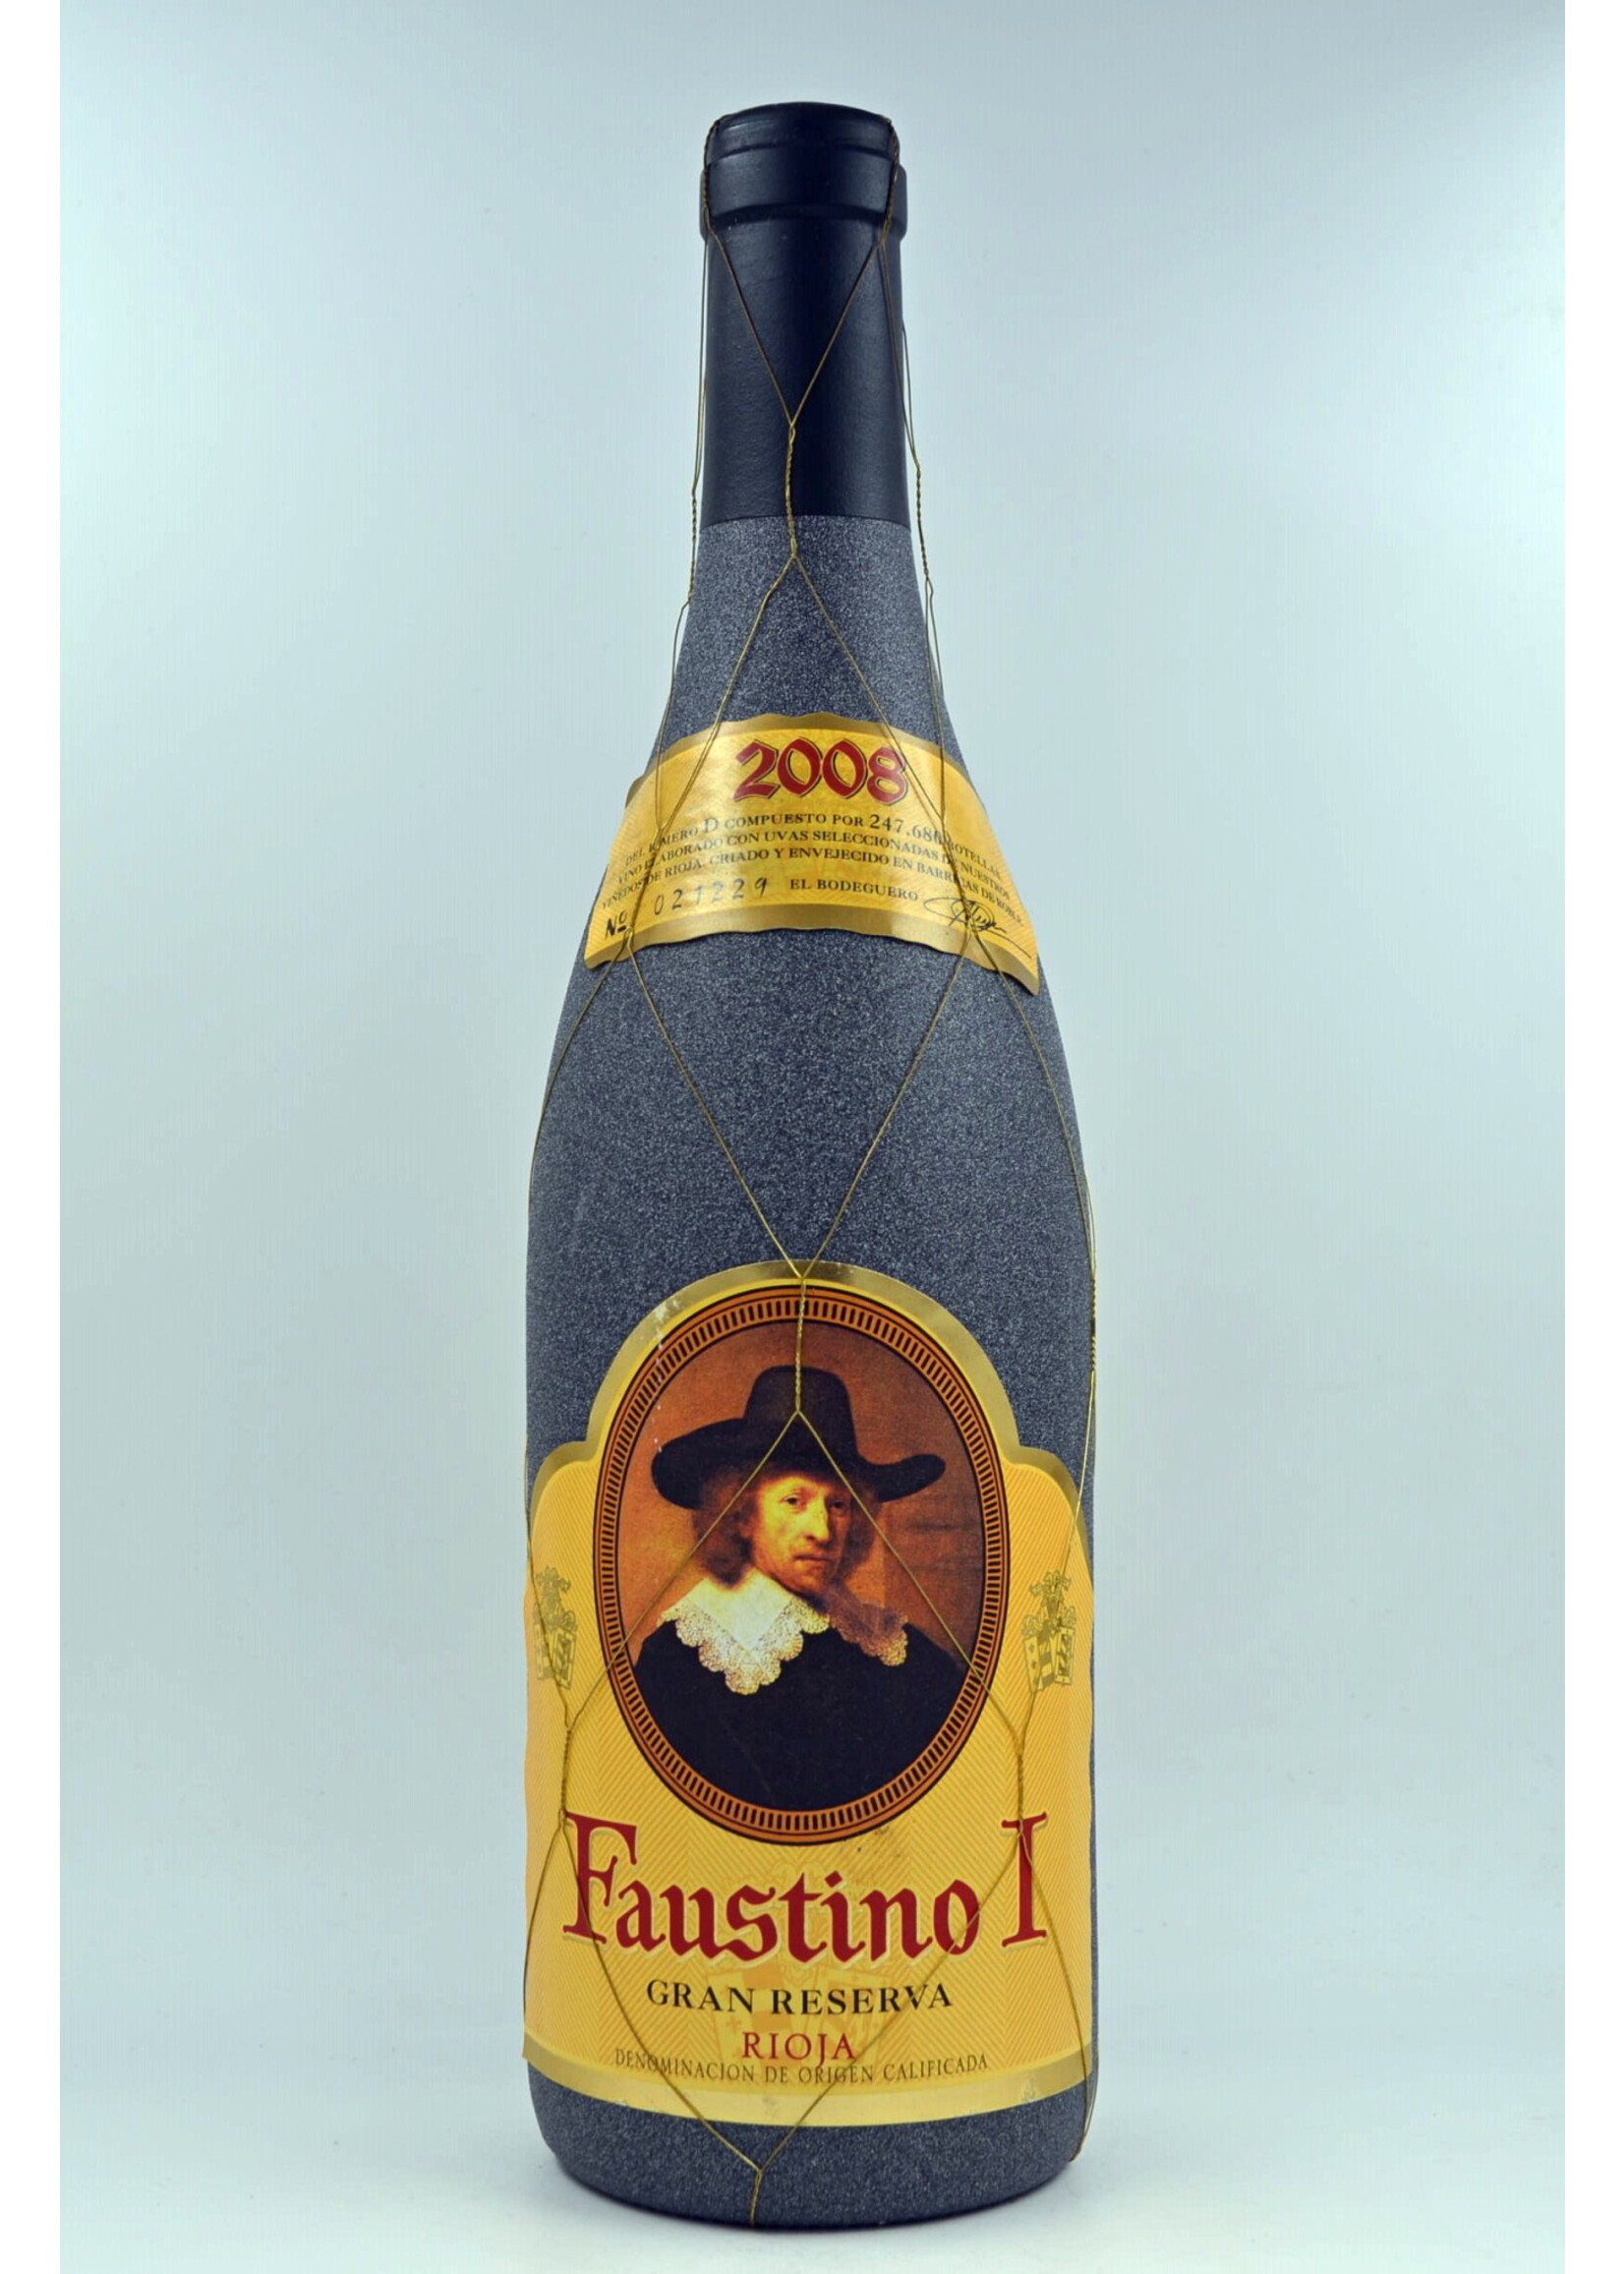 2008 Rioja Gran Reserva Faustino I